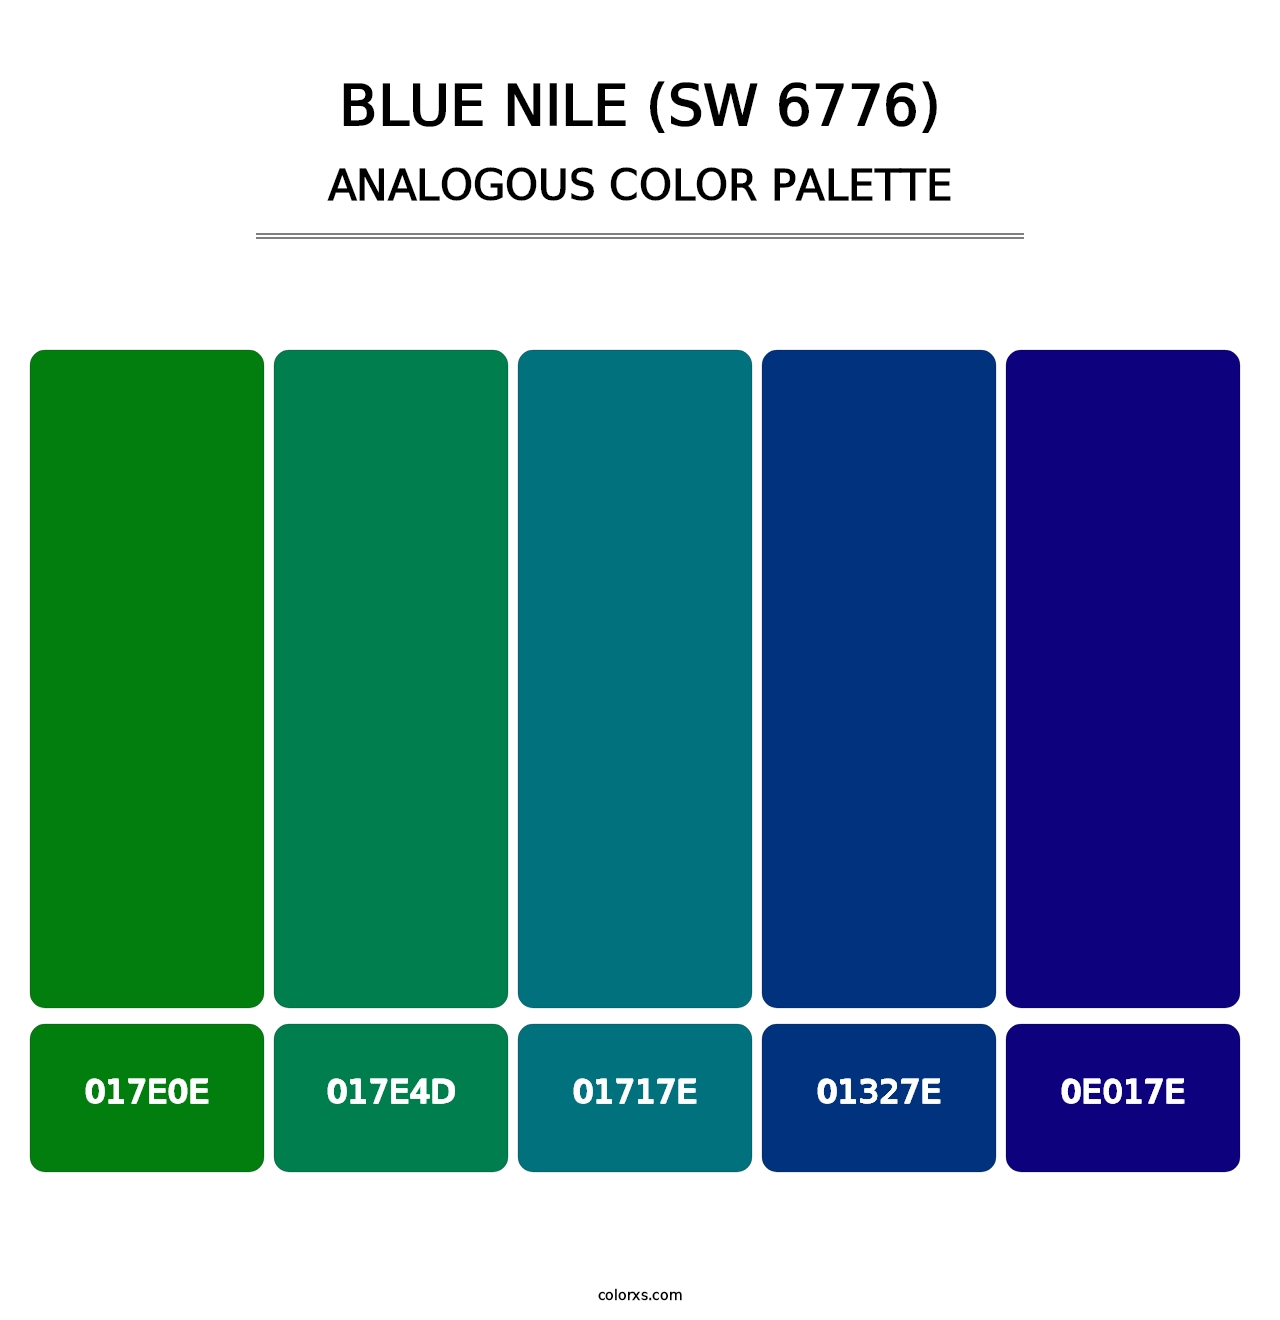 Blue Nile (SW 6776) - Analogous Color Palette